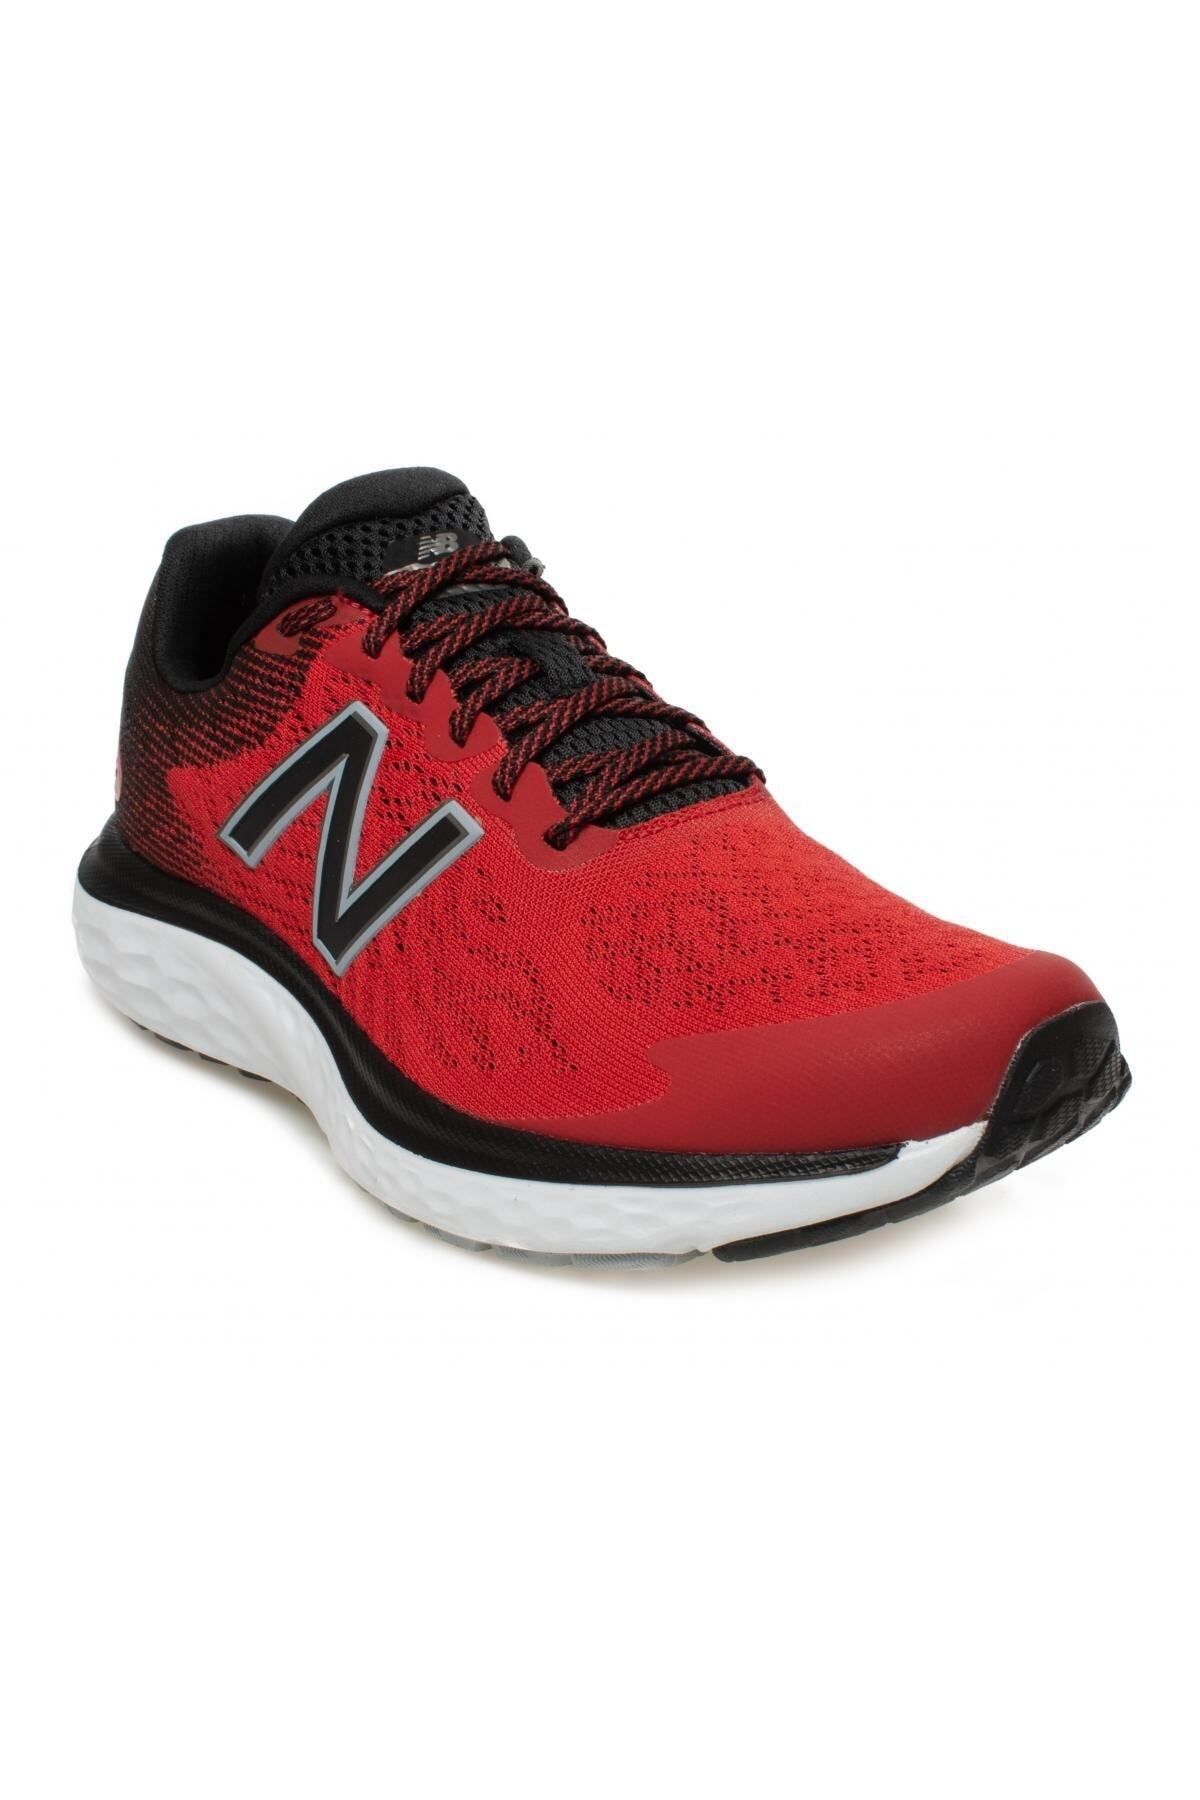 New Balance 680-m Running Shoes Kırmızı Erkek Spor Ayakkabı